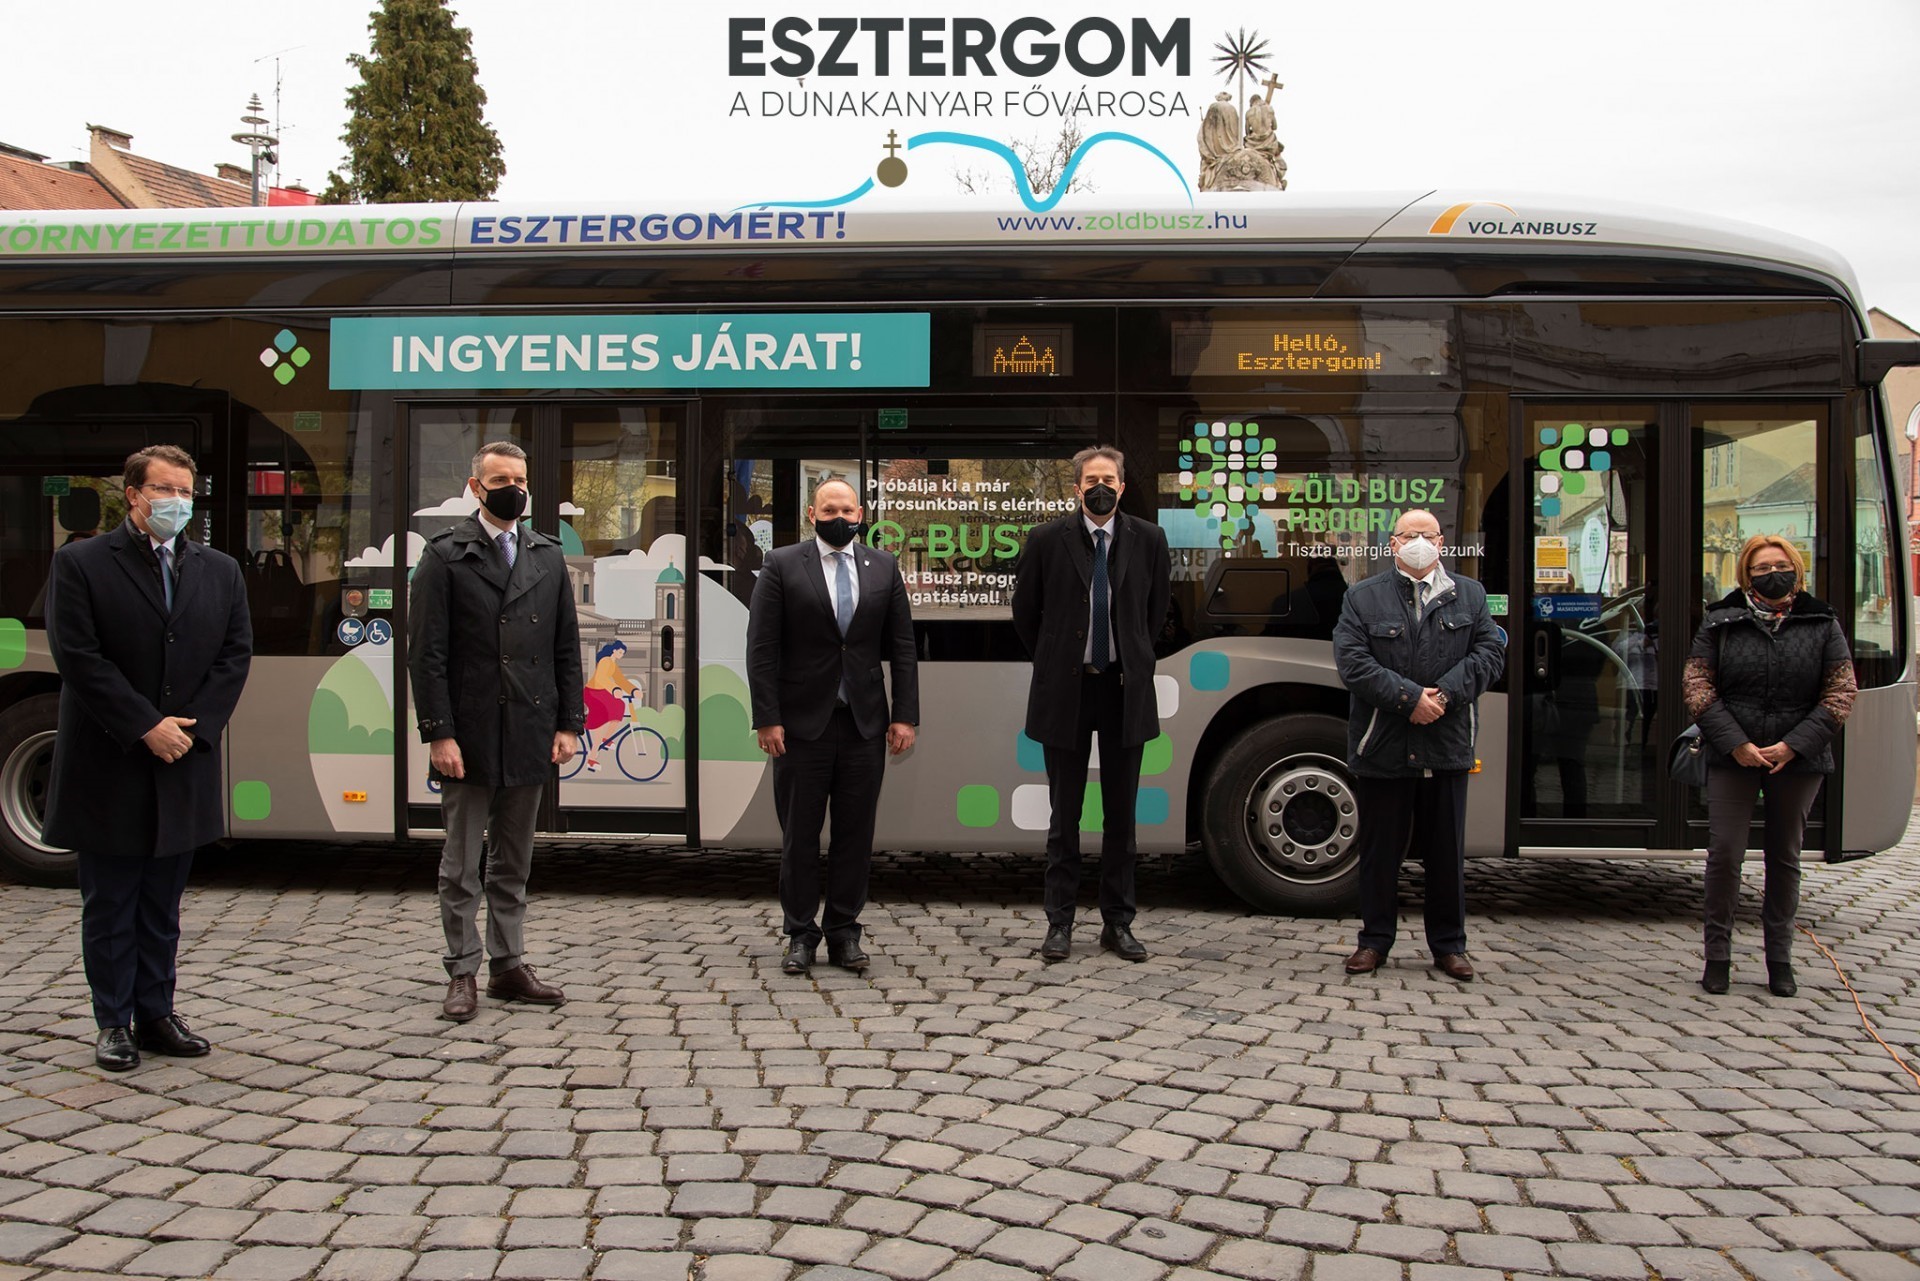 Elektromos busz próbaüzeme kezdődött Esztergomban